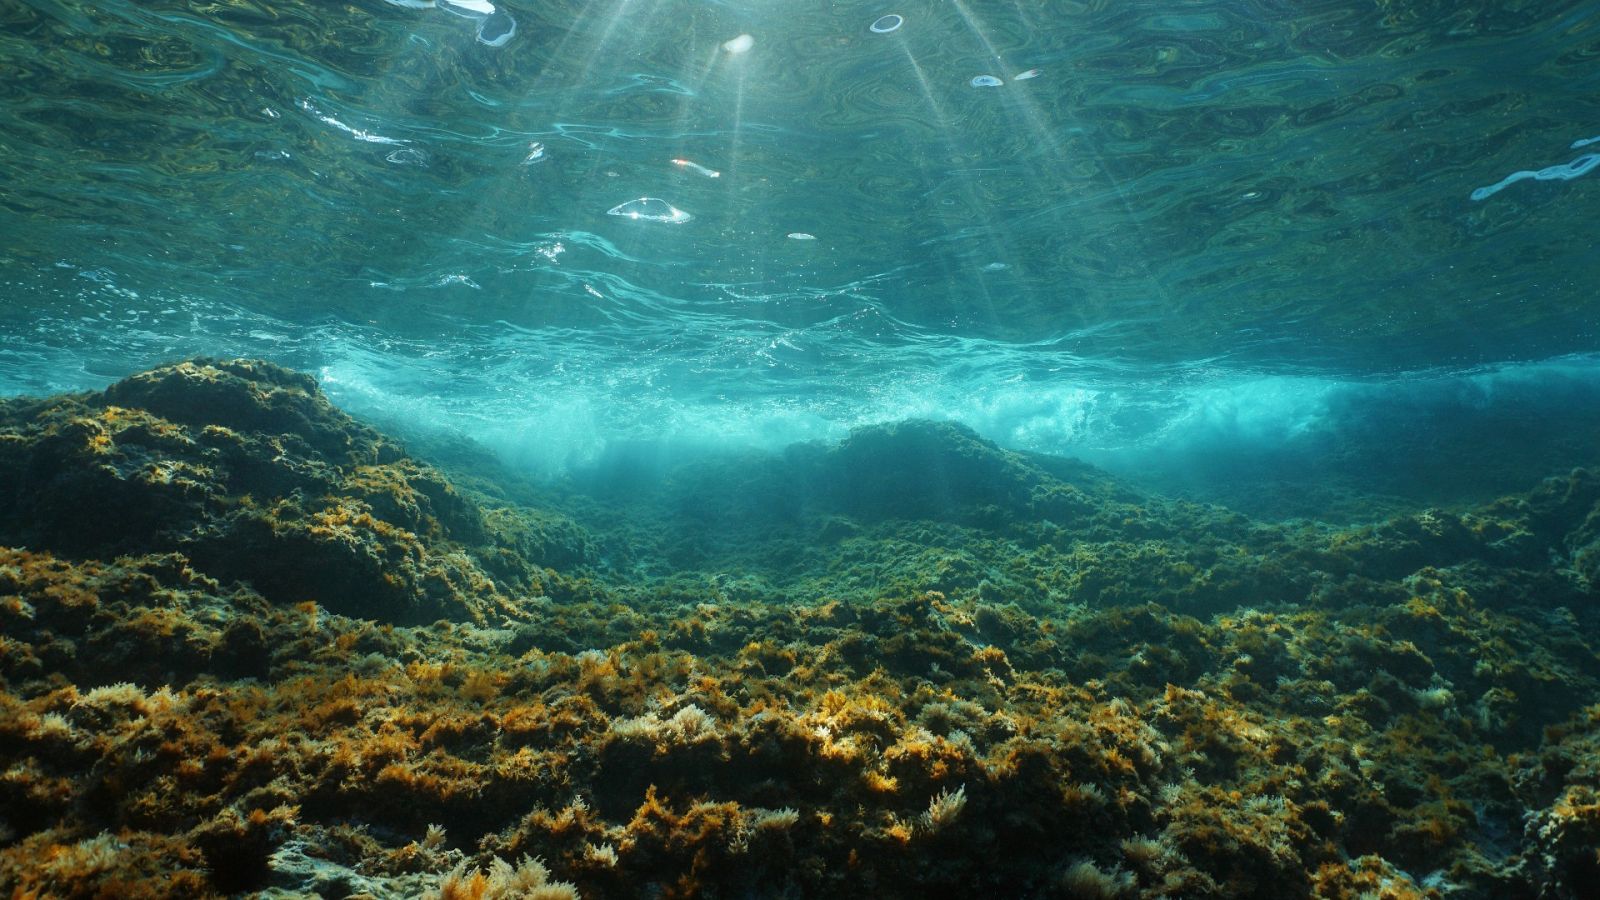 La luz del sol bajo el agua a través de la superficie del agua visto desde un fondo rocoso con algas en el mar Mediterráneo, Cataluña, Costa Brava, España.